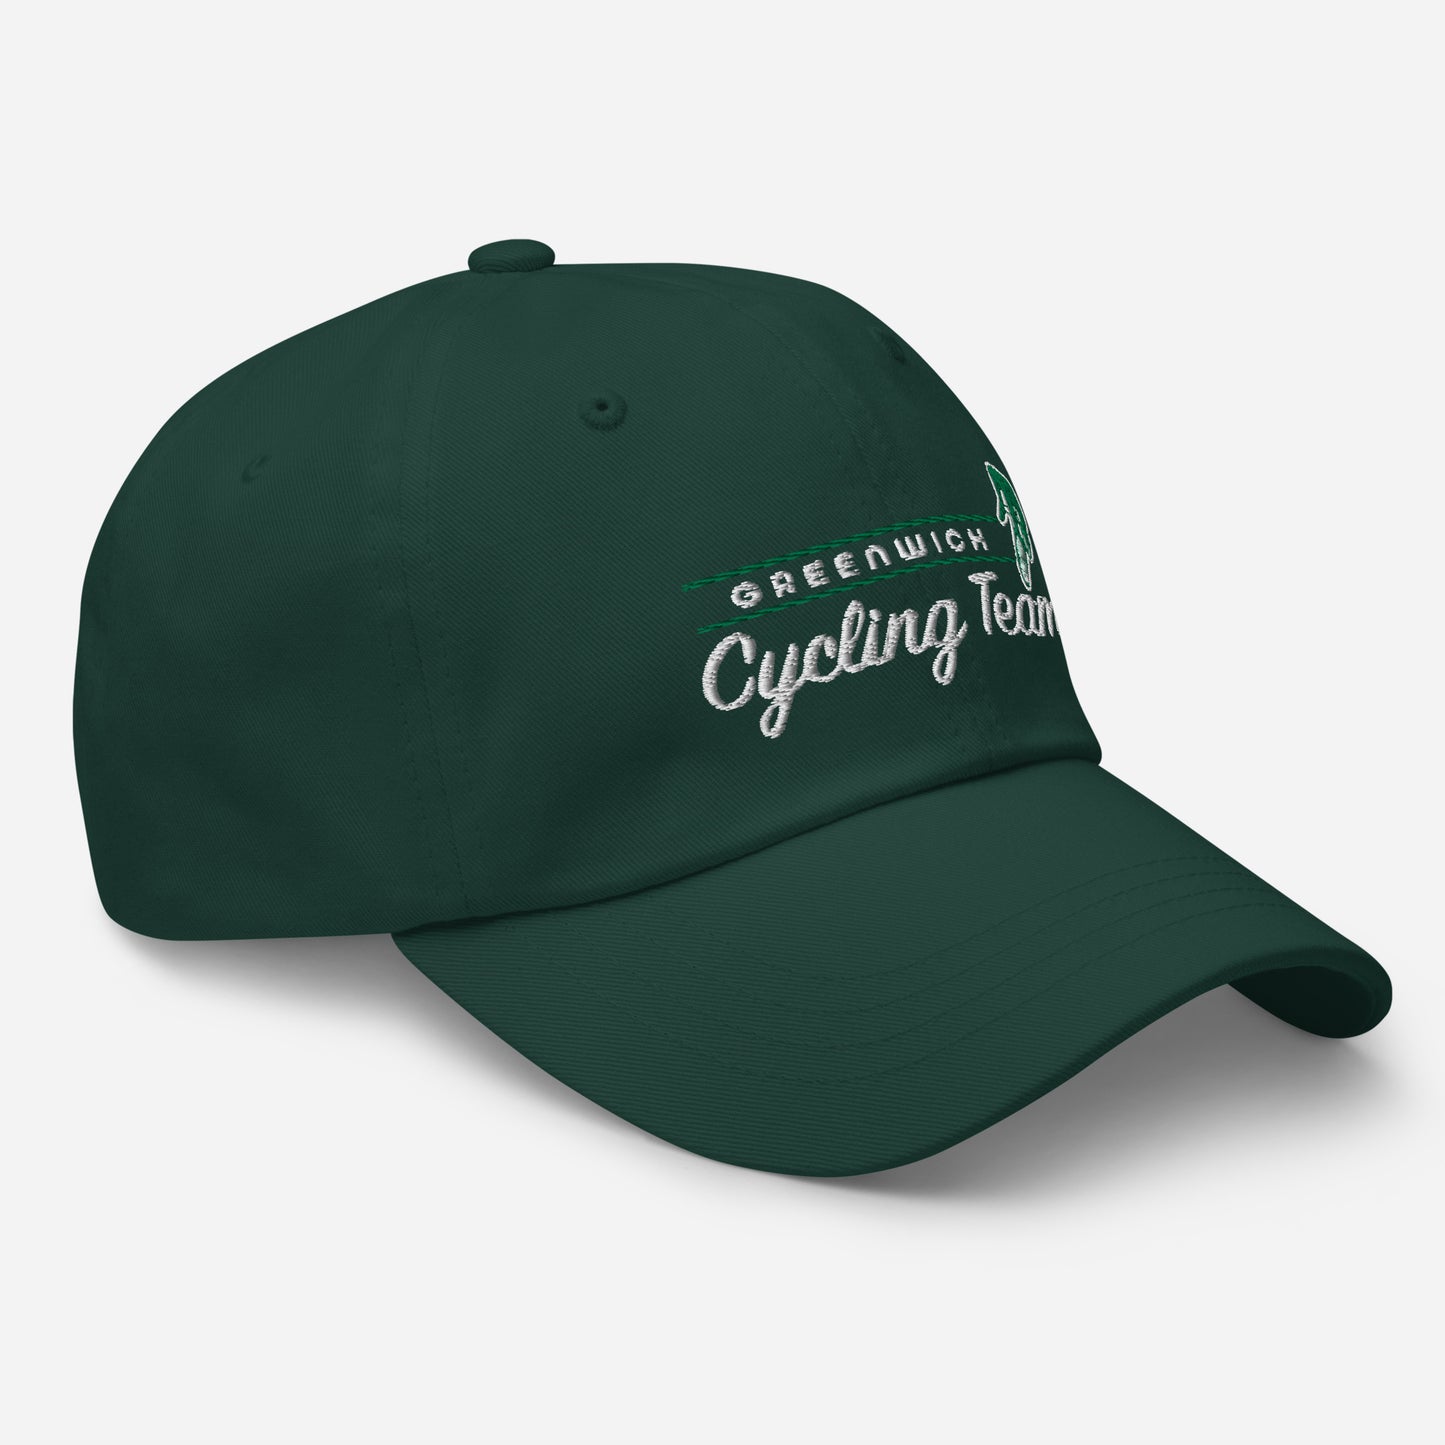 Greenwich CT. Cycling Team- Dad hat